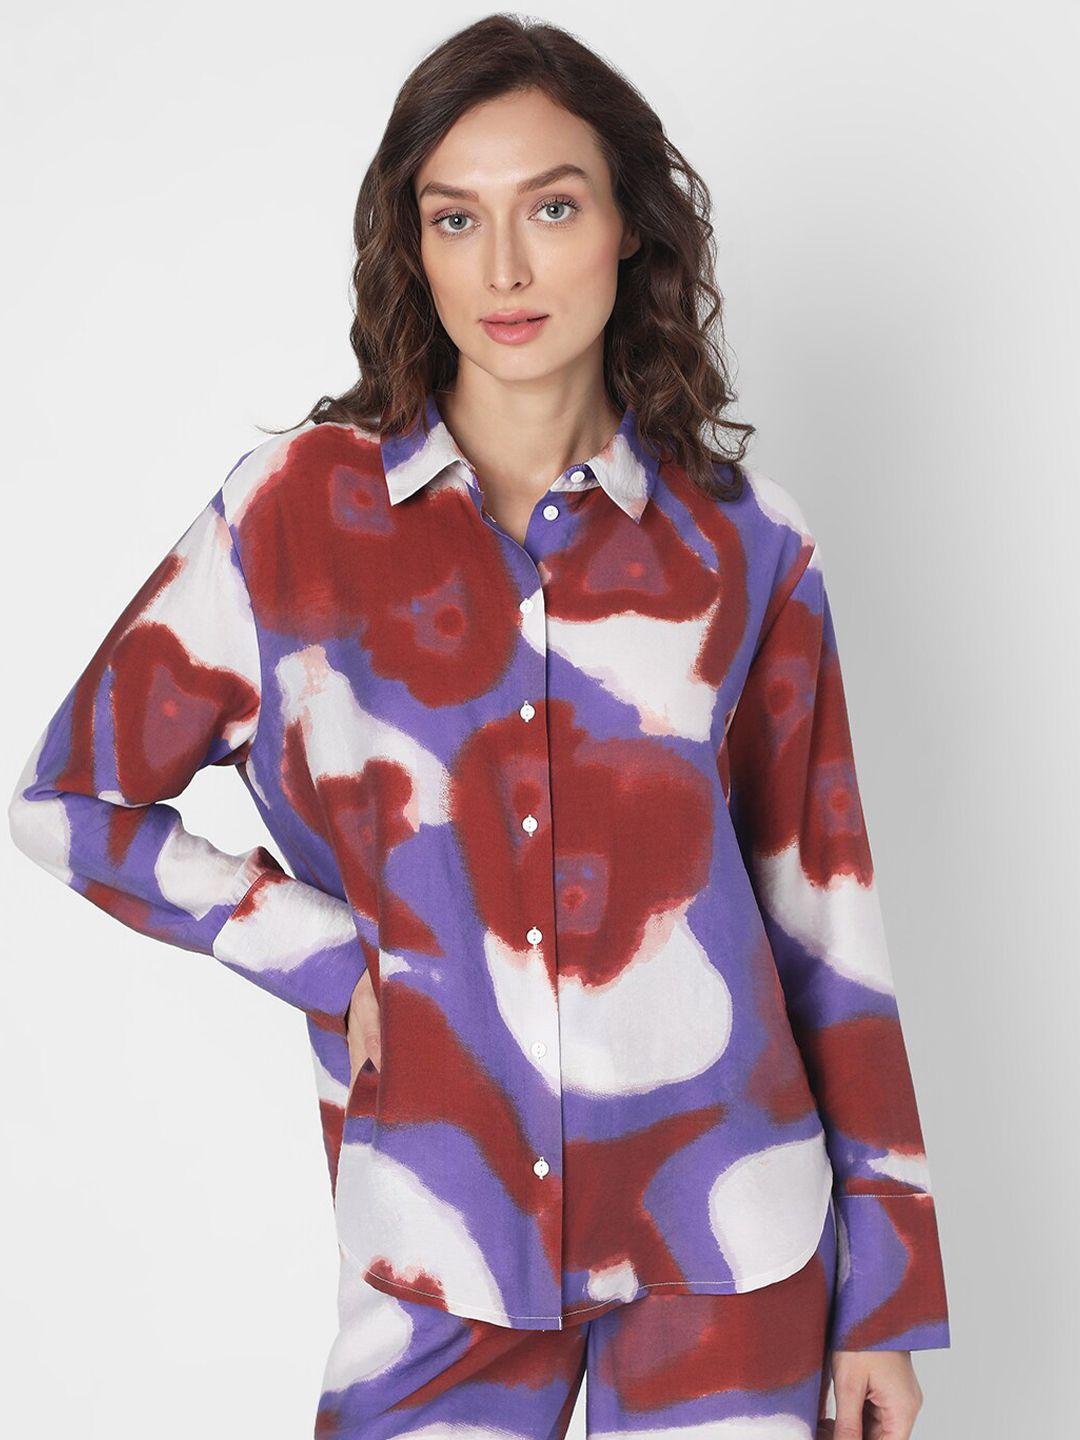 vero moda abstract printed spread collar casual shirt